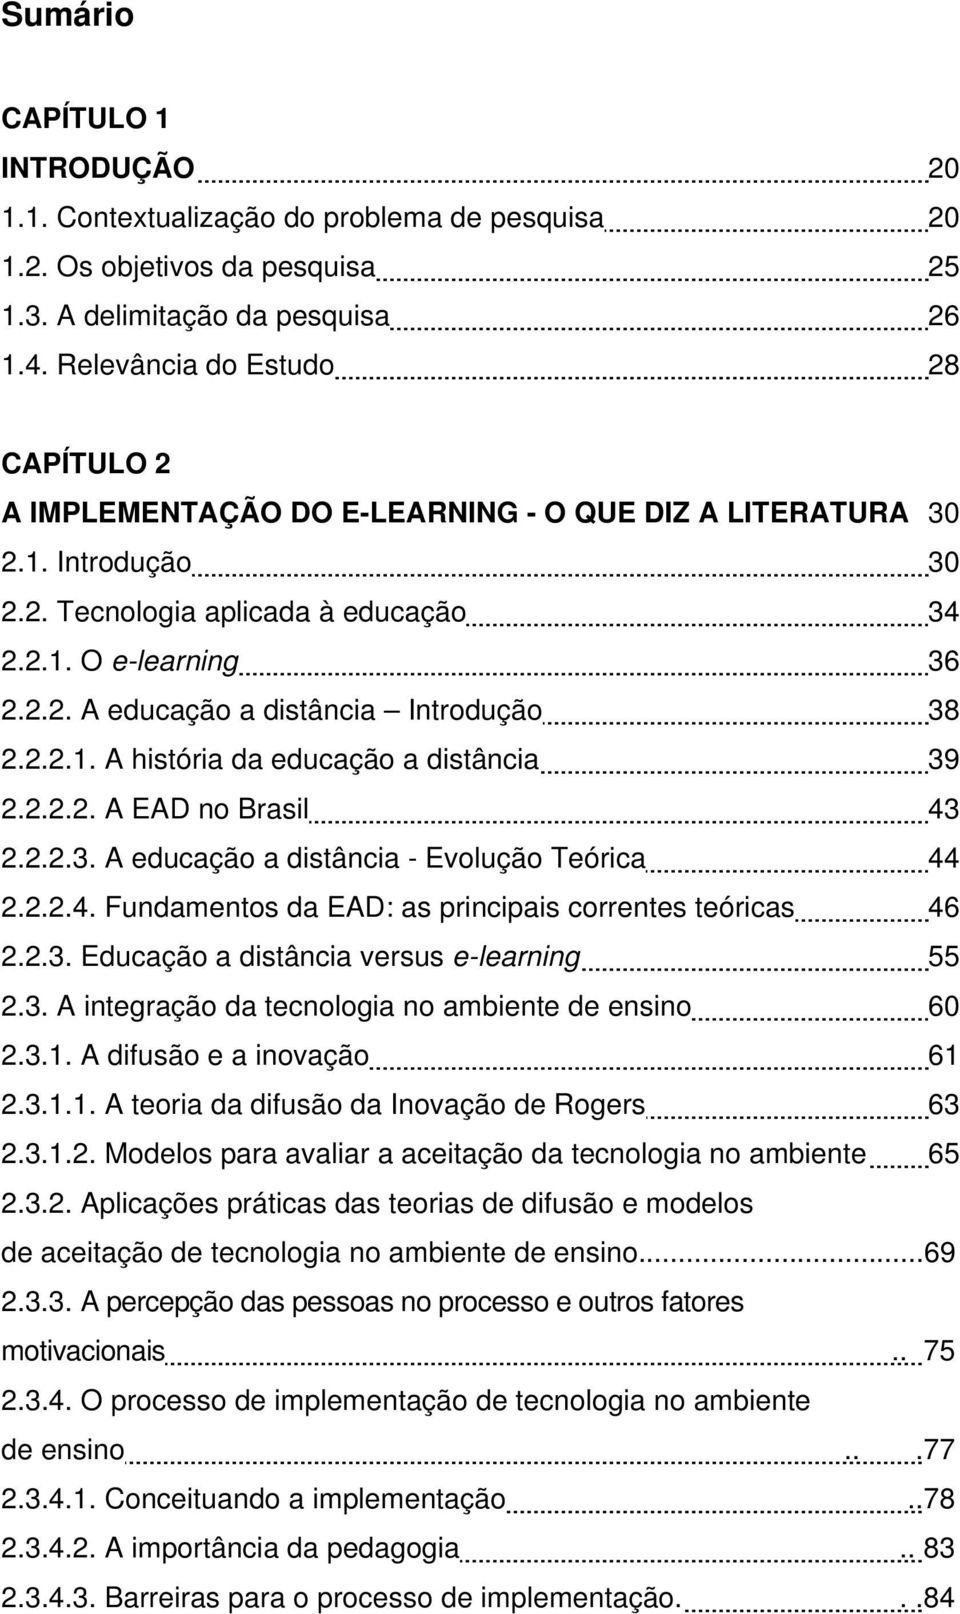 2.2.1. A história da educação a distância 39 2.2.2.2. A EAD no Brasil 43 2.2.2.3. A educação a distância - Evolução Teórica 44 2.2.2.4. Fundamentos da EAD: as principais correntes teóricas 46 2.2.3. Educação a distância versus e-learning 55 2.